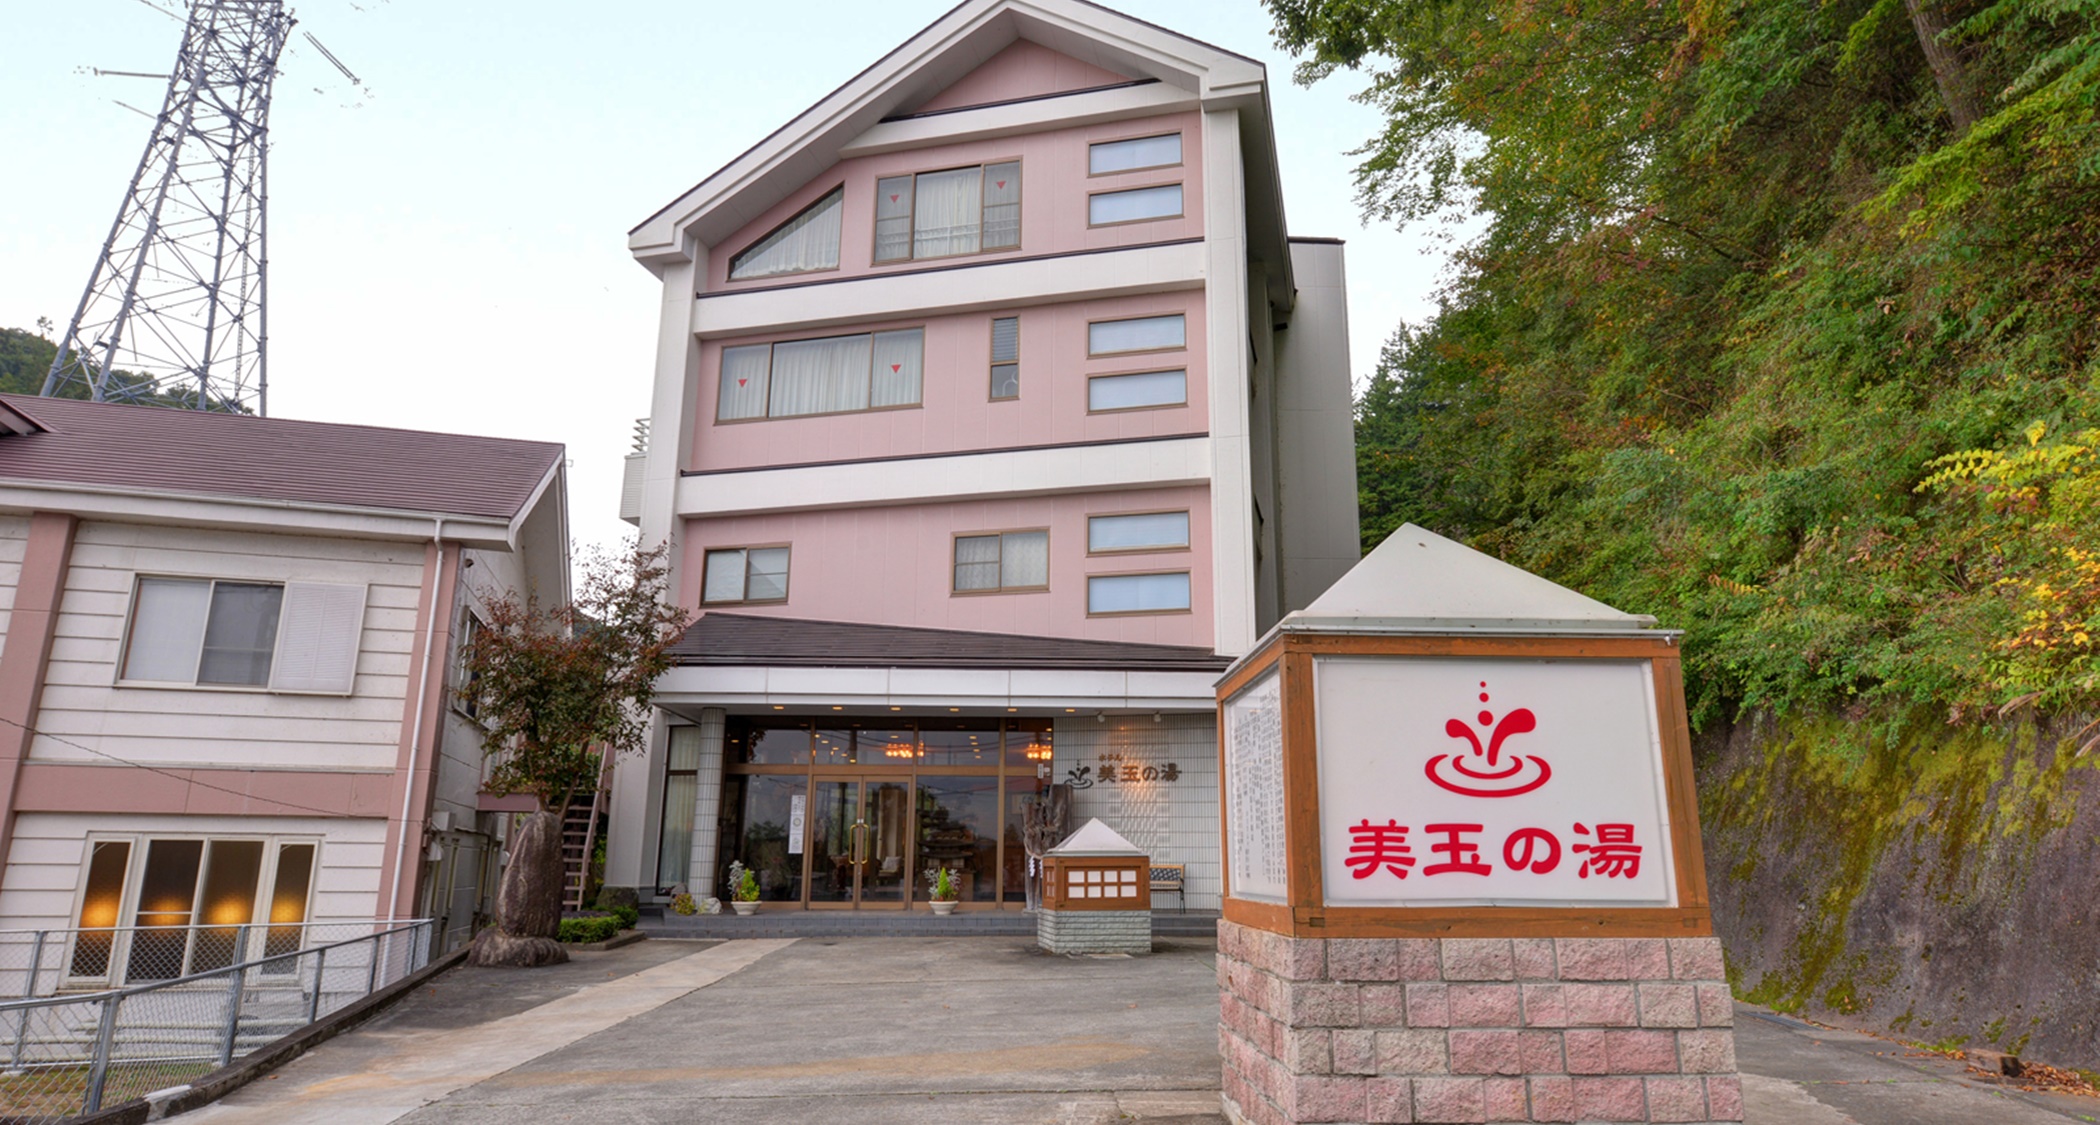 関東でゴルフ宿泊パックがある温泉付き宿でおすすめを教えてください